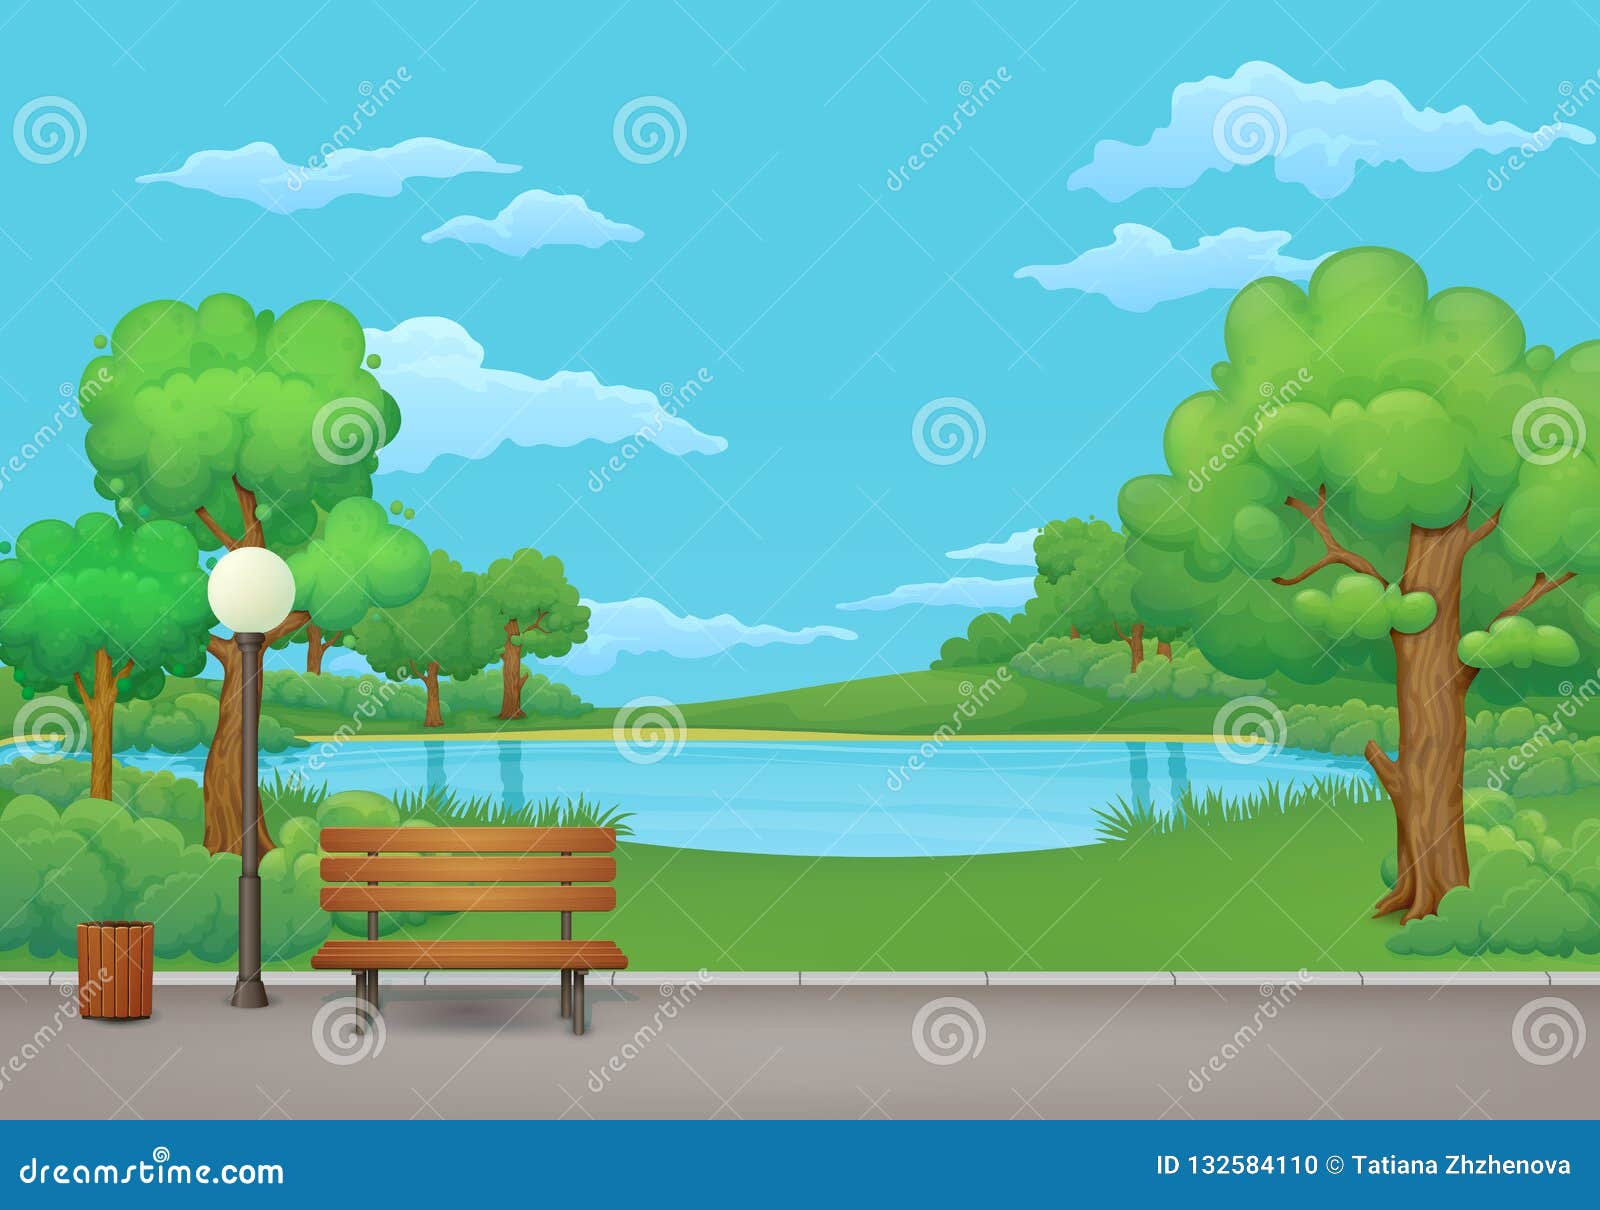 日横向公园夏天绿色草甸 树和湖背景的向量例证 插画包括有捕鱼 森林 草甸 池塘 工厂